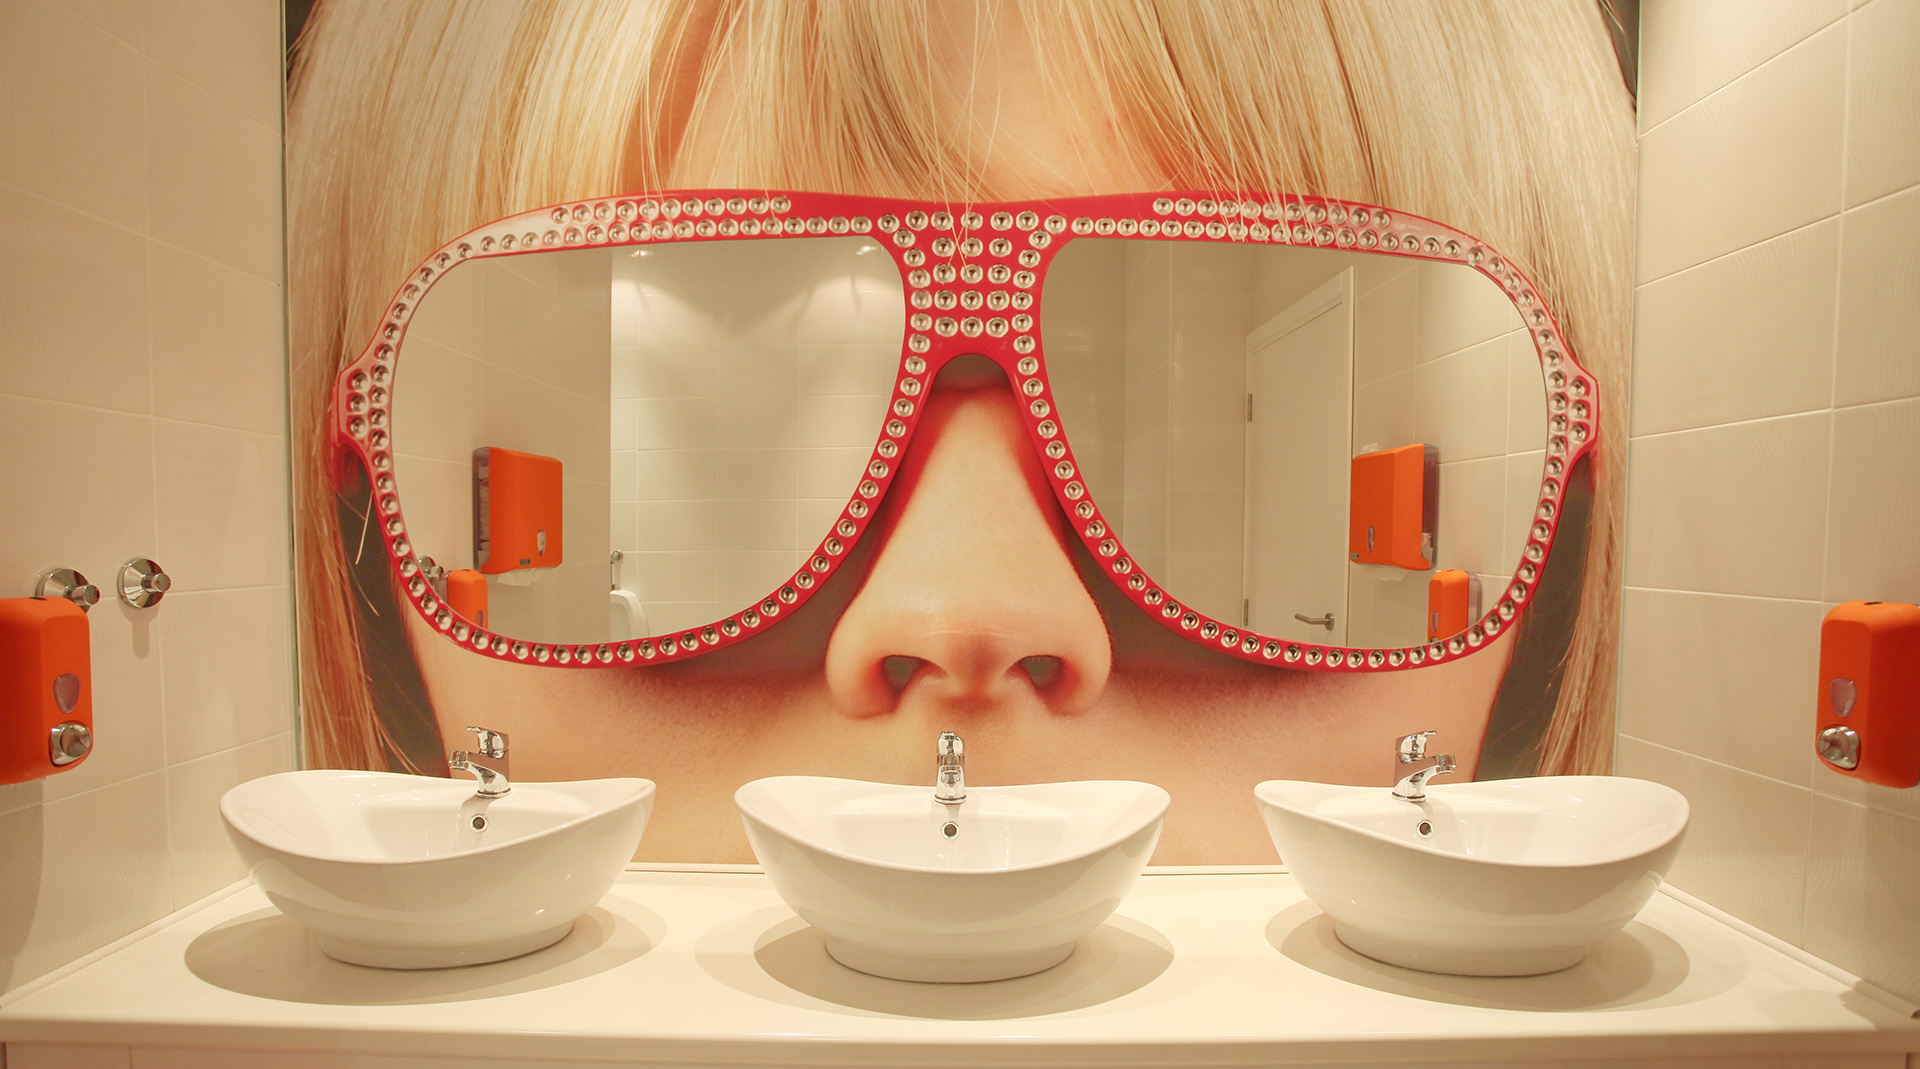 Dizajn vizuala na zidu enterijera - Ogledala u obliku naočara Sugar and Spice restoran